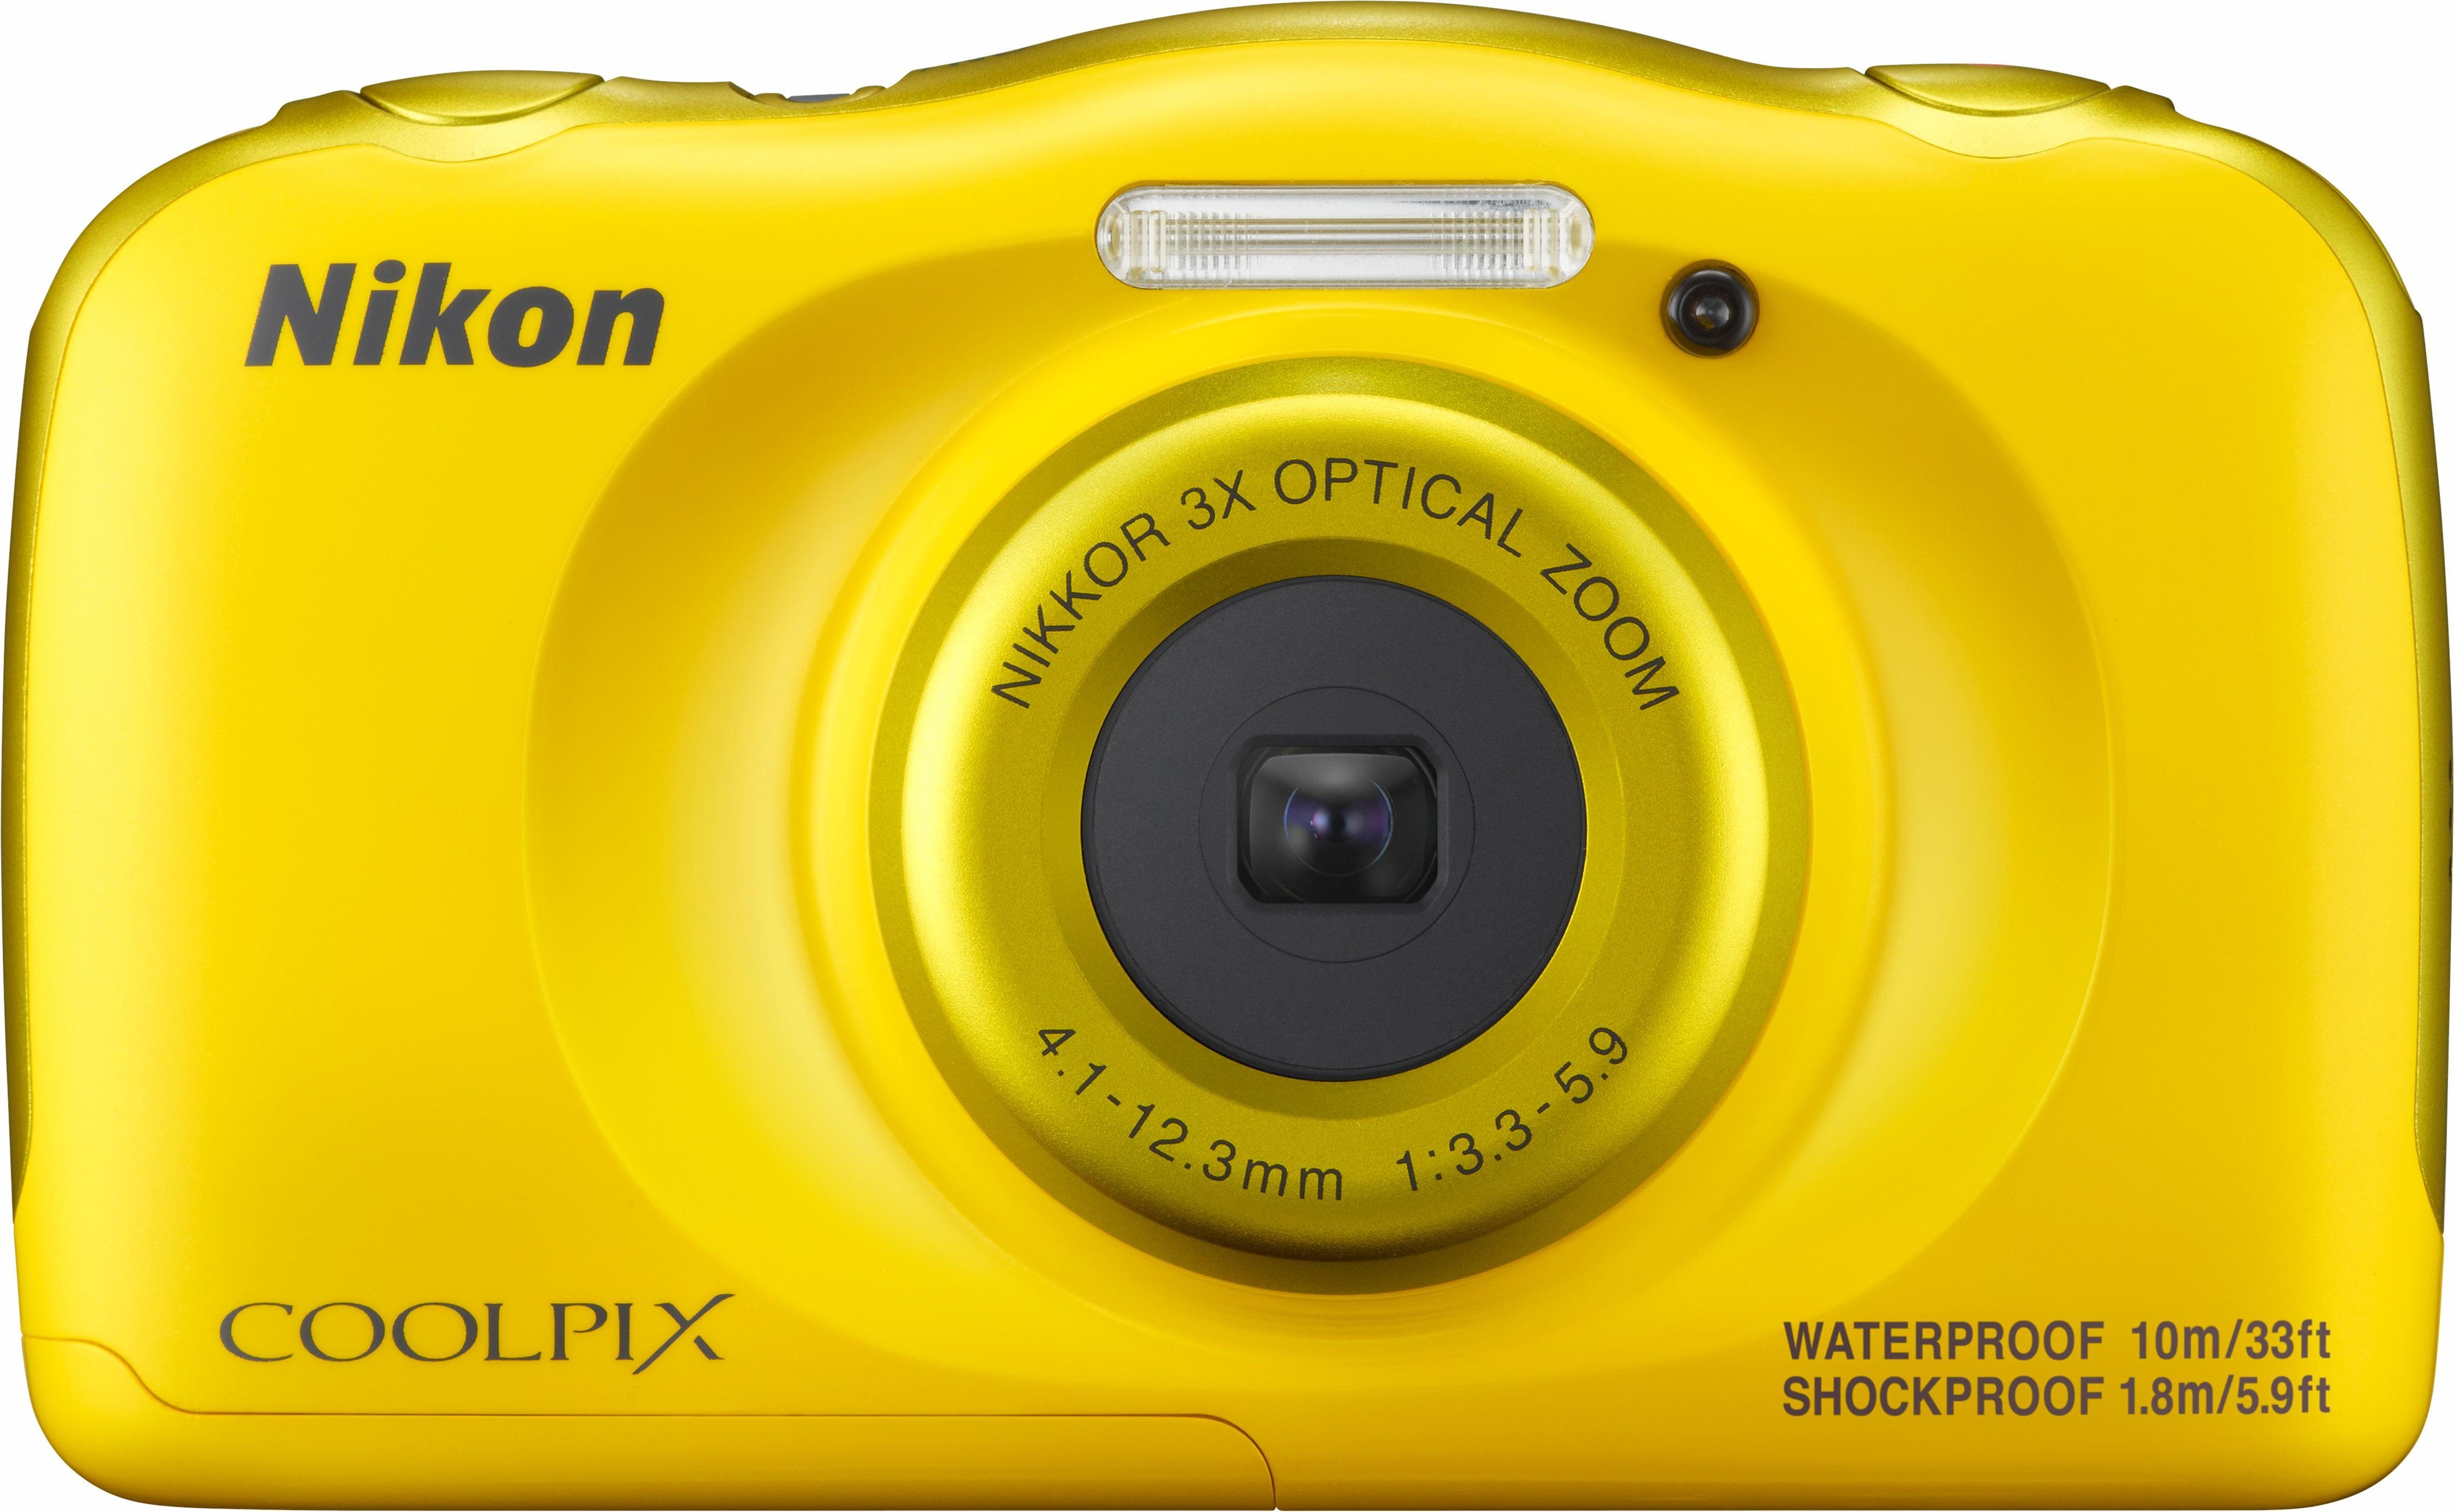 Nikon Nikon Coolpix W100 compactcamera, 13,2 megapixel, 3x optische zoom, 6,7 cm (2,7 inch) display